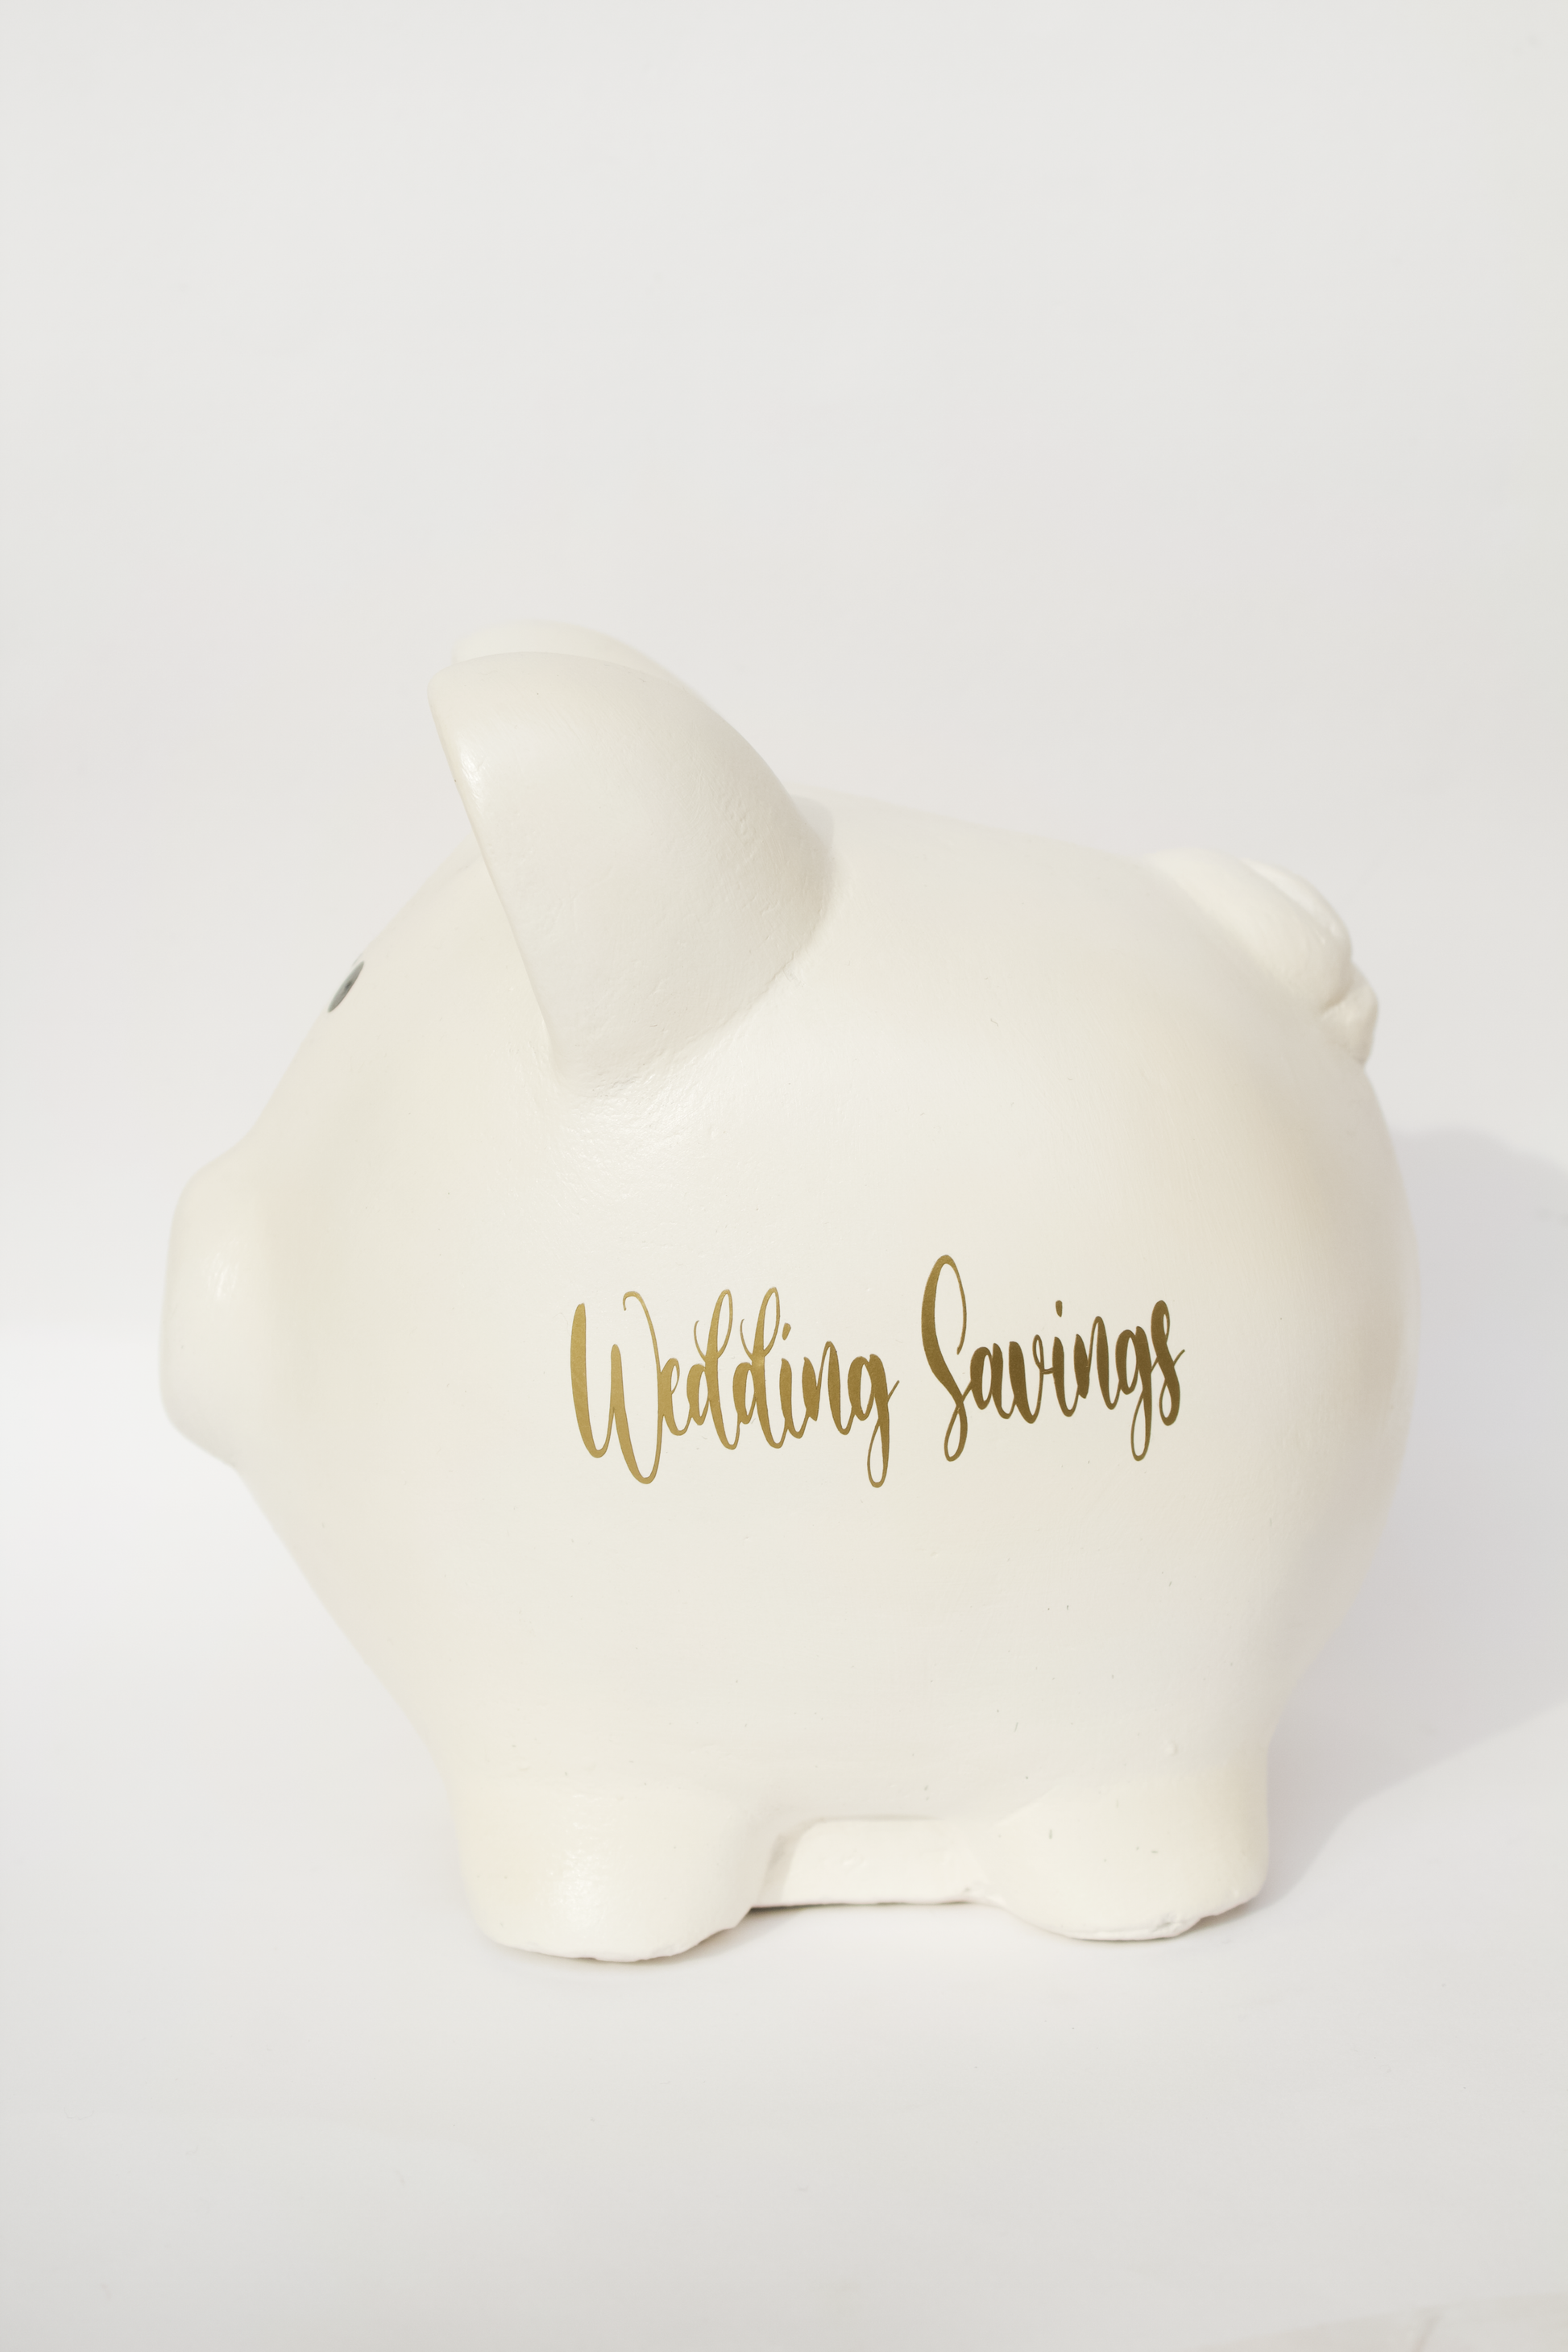 Alcancia en forma de cochinito con vinil dorado "Wedding Savings"